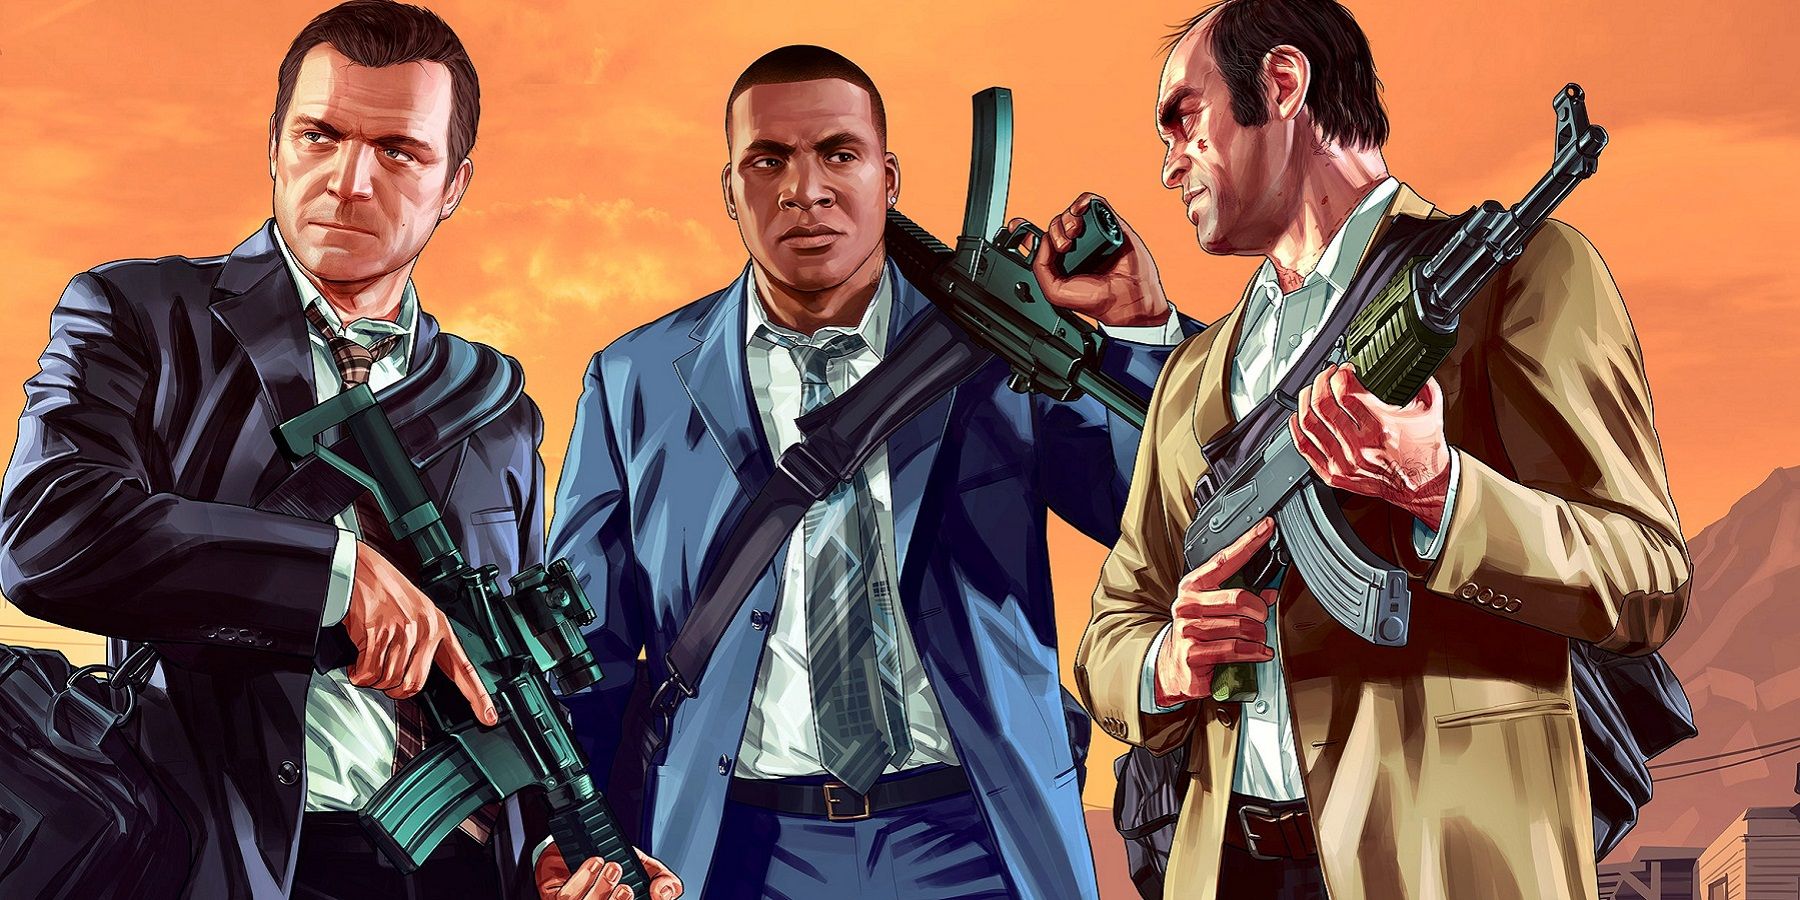 Изображение из Grand Theft Auto 5, показывающее Майкла, Франклина и Тревора в костюмах и с оружием в руках.